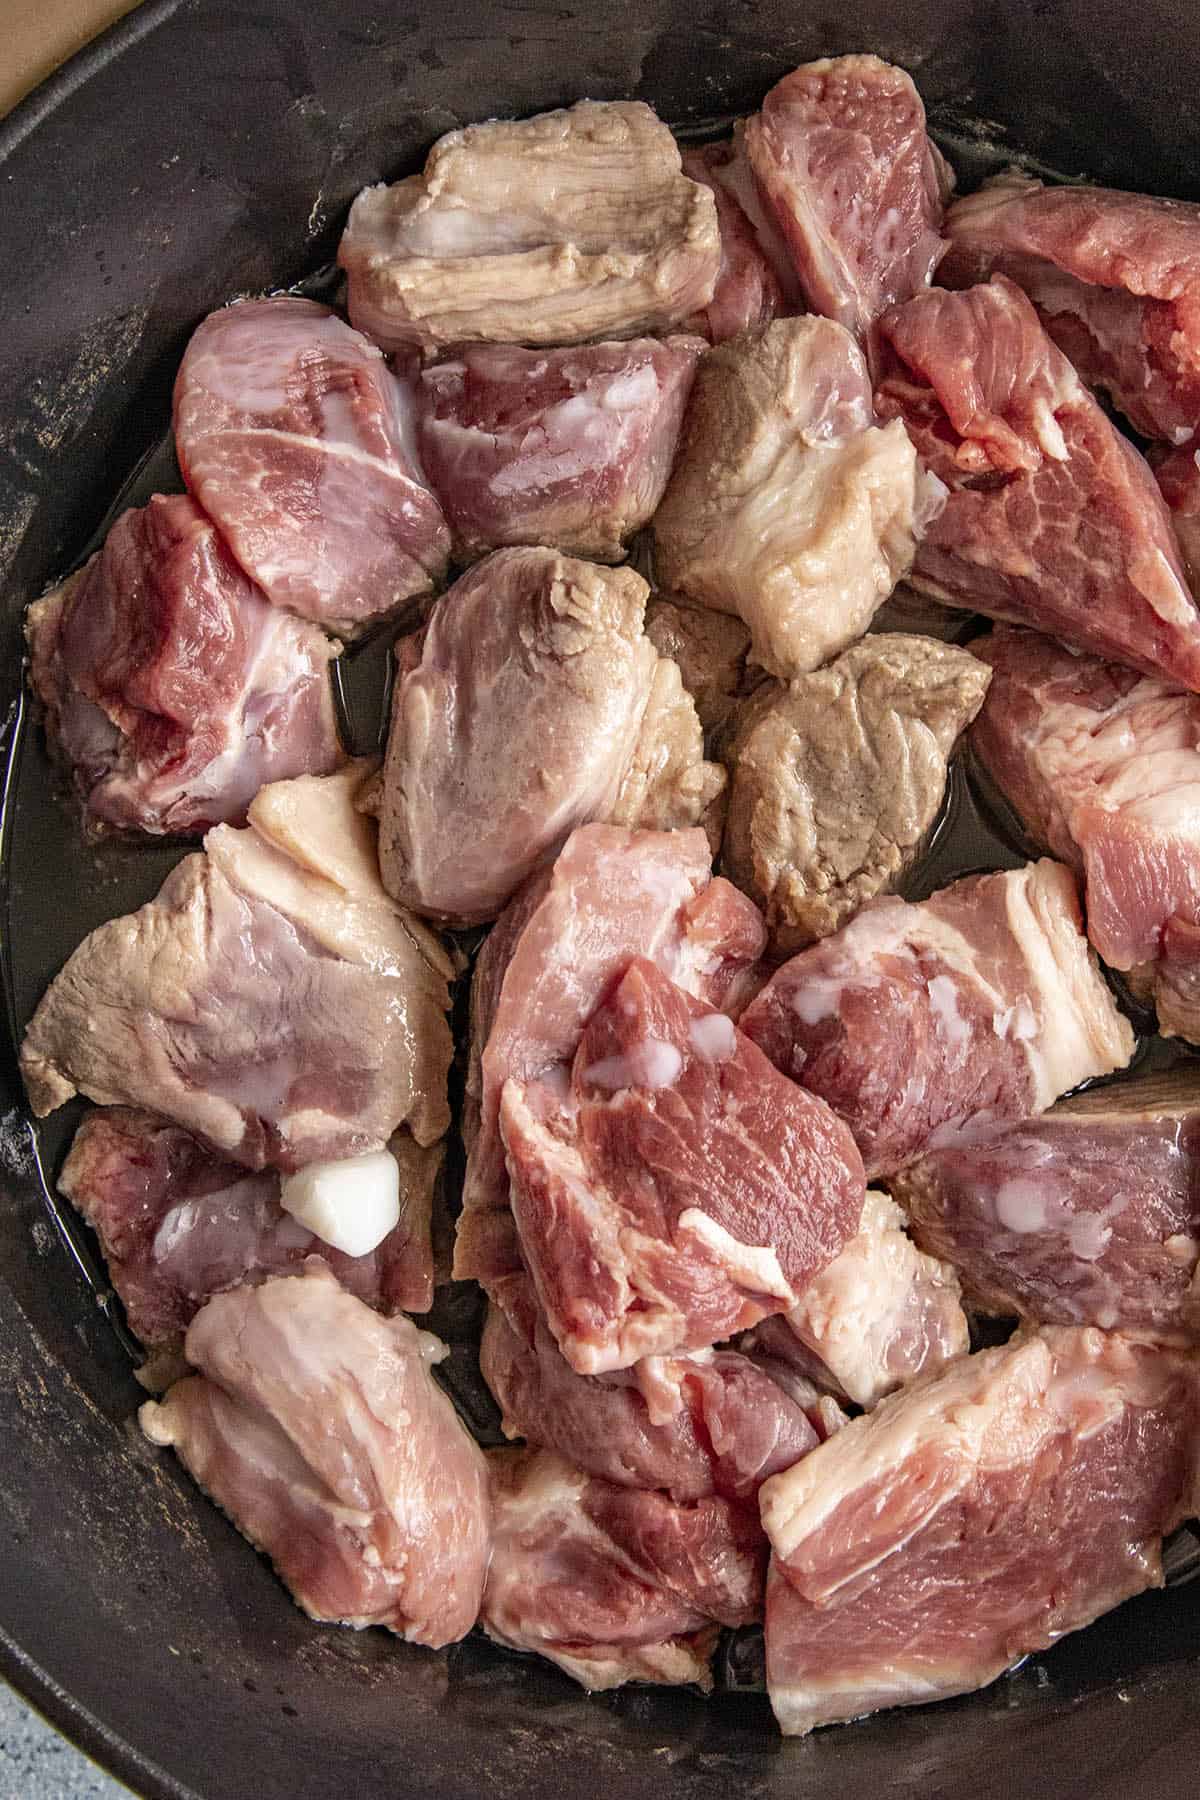 Browning the pork chunks to make Pork Carnitas